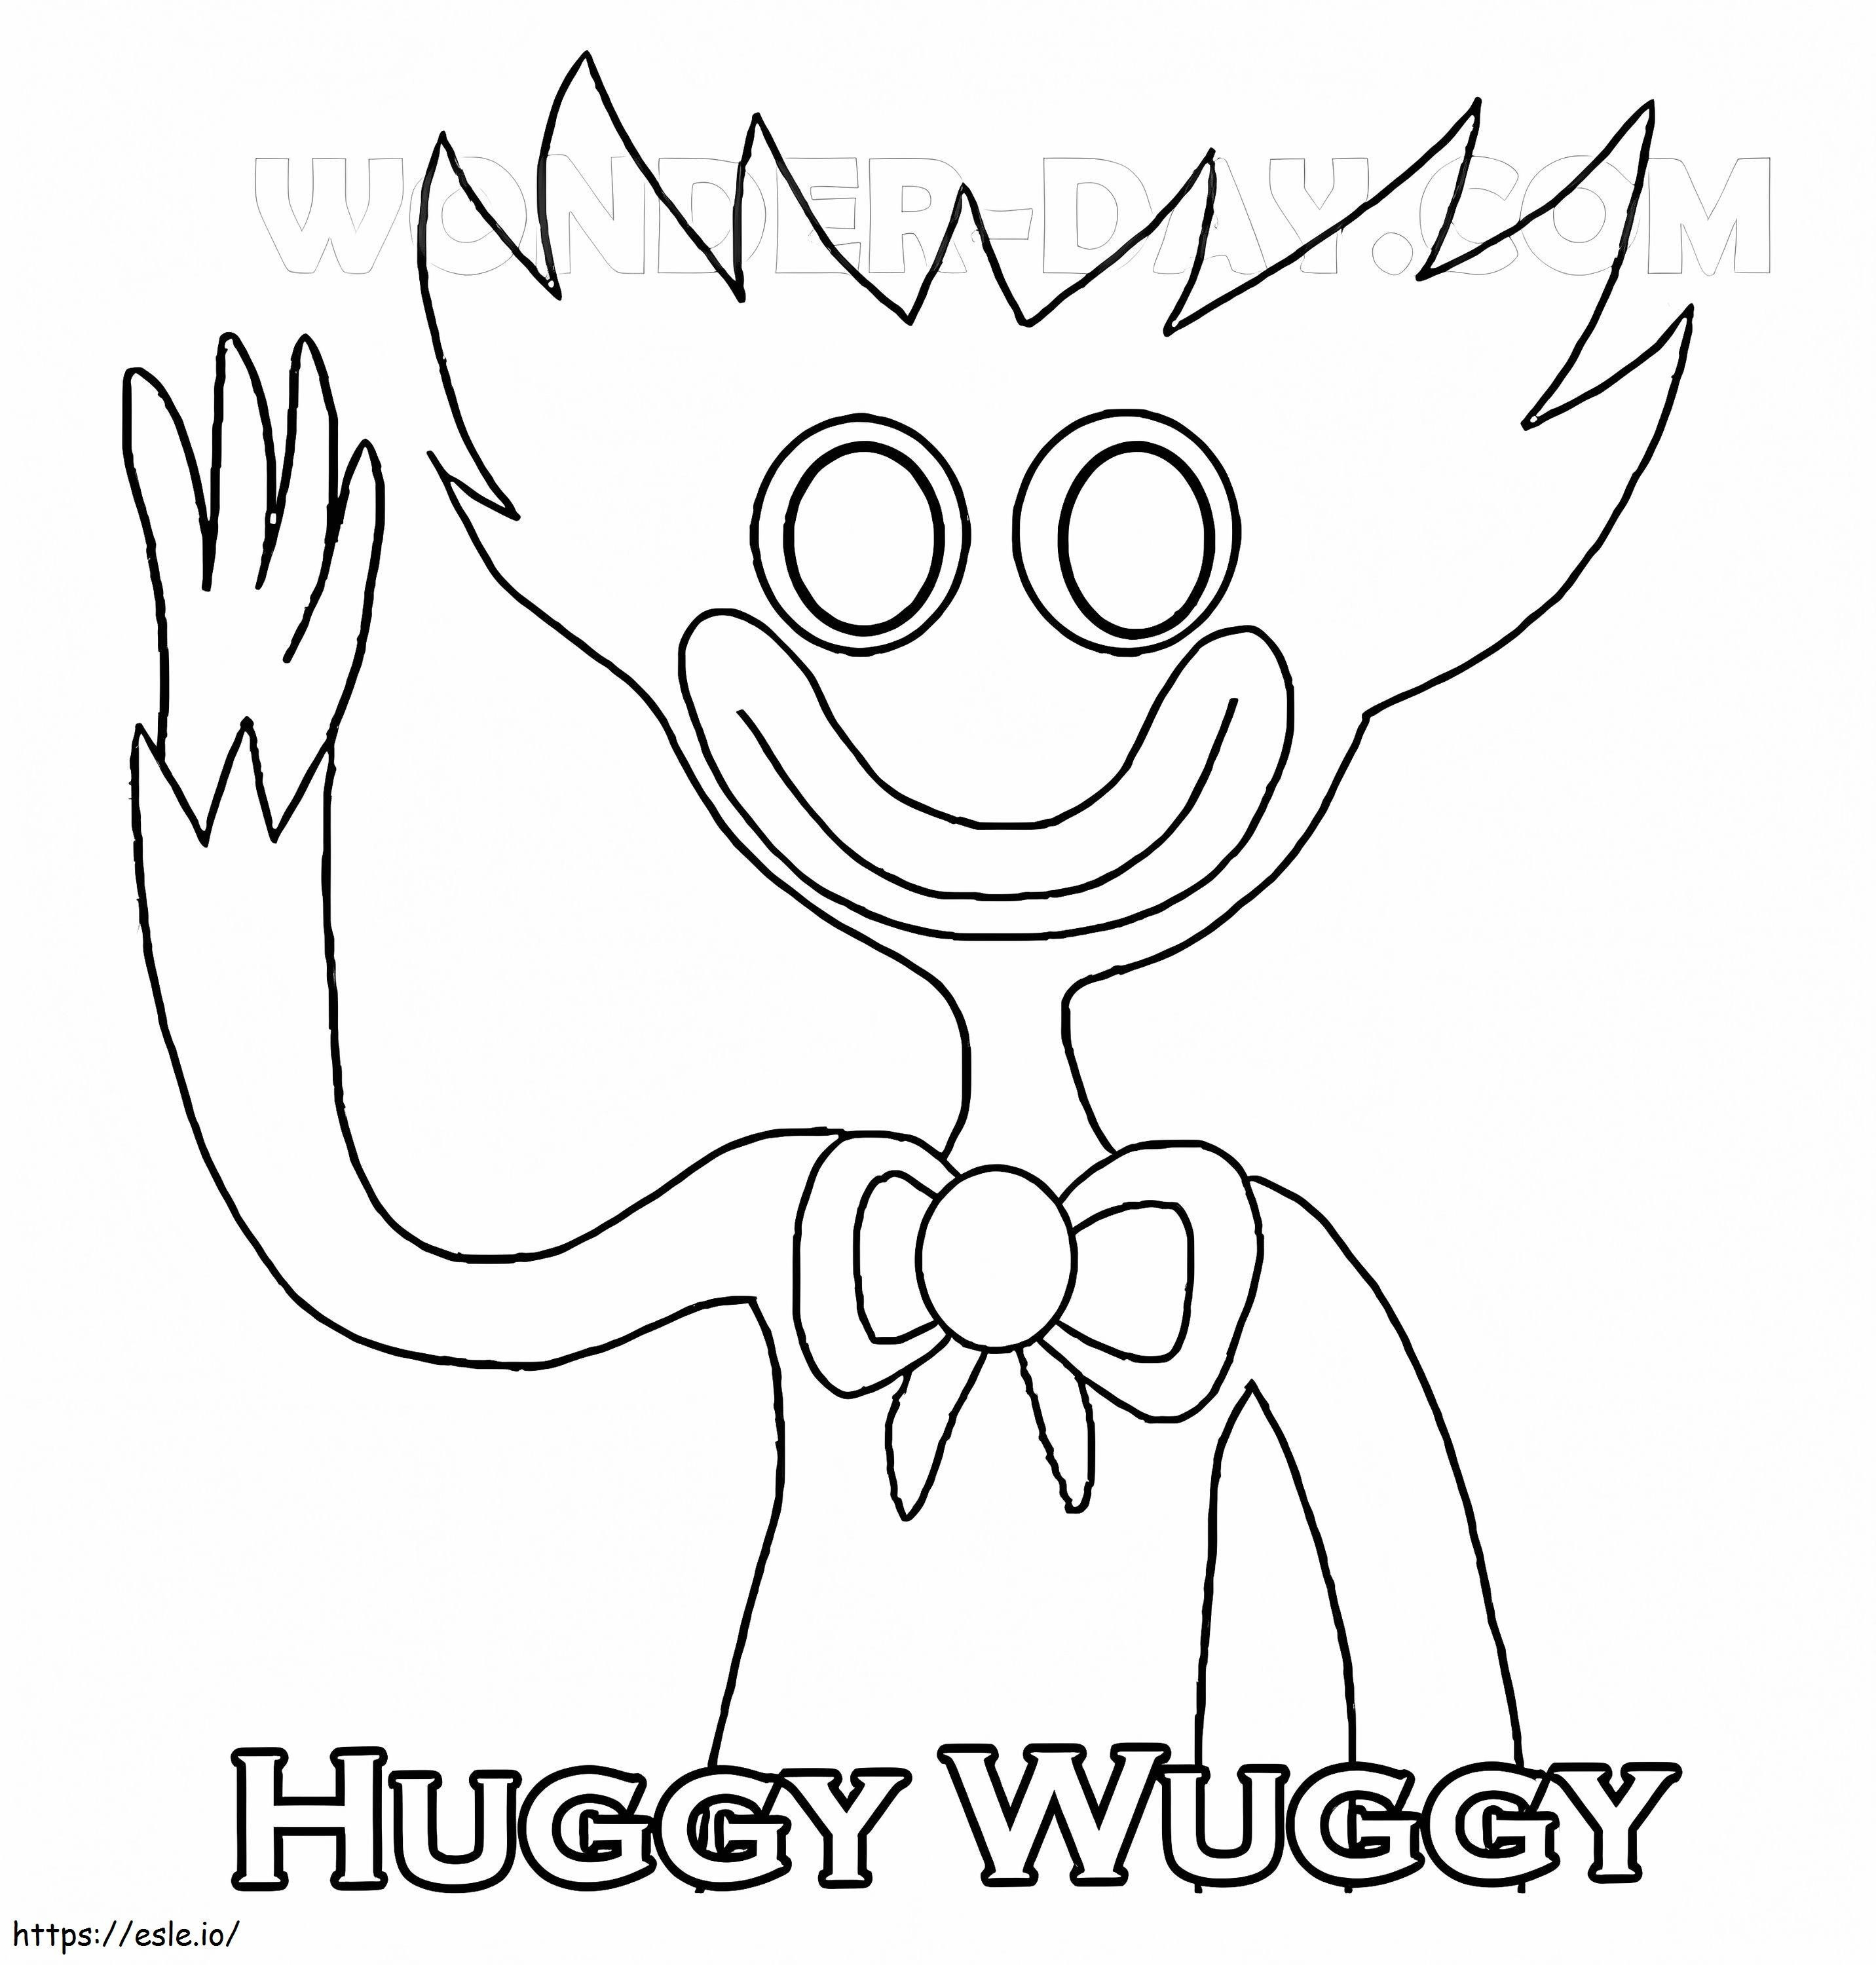 Abraço Wuggy 7 para colorir